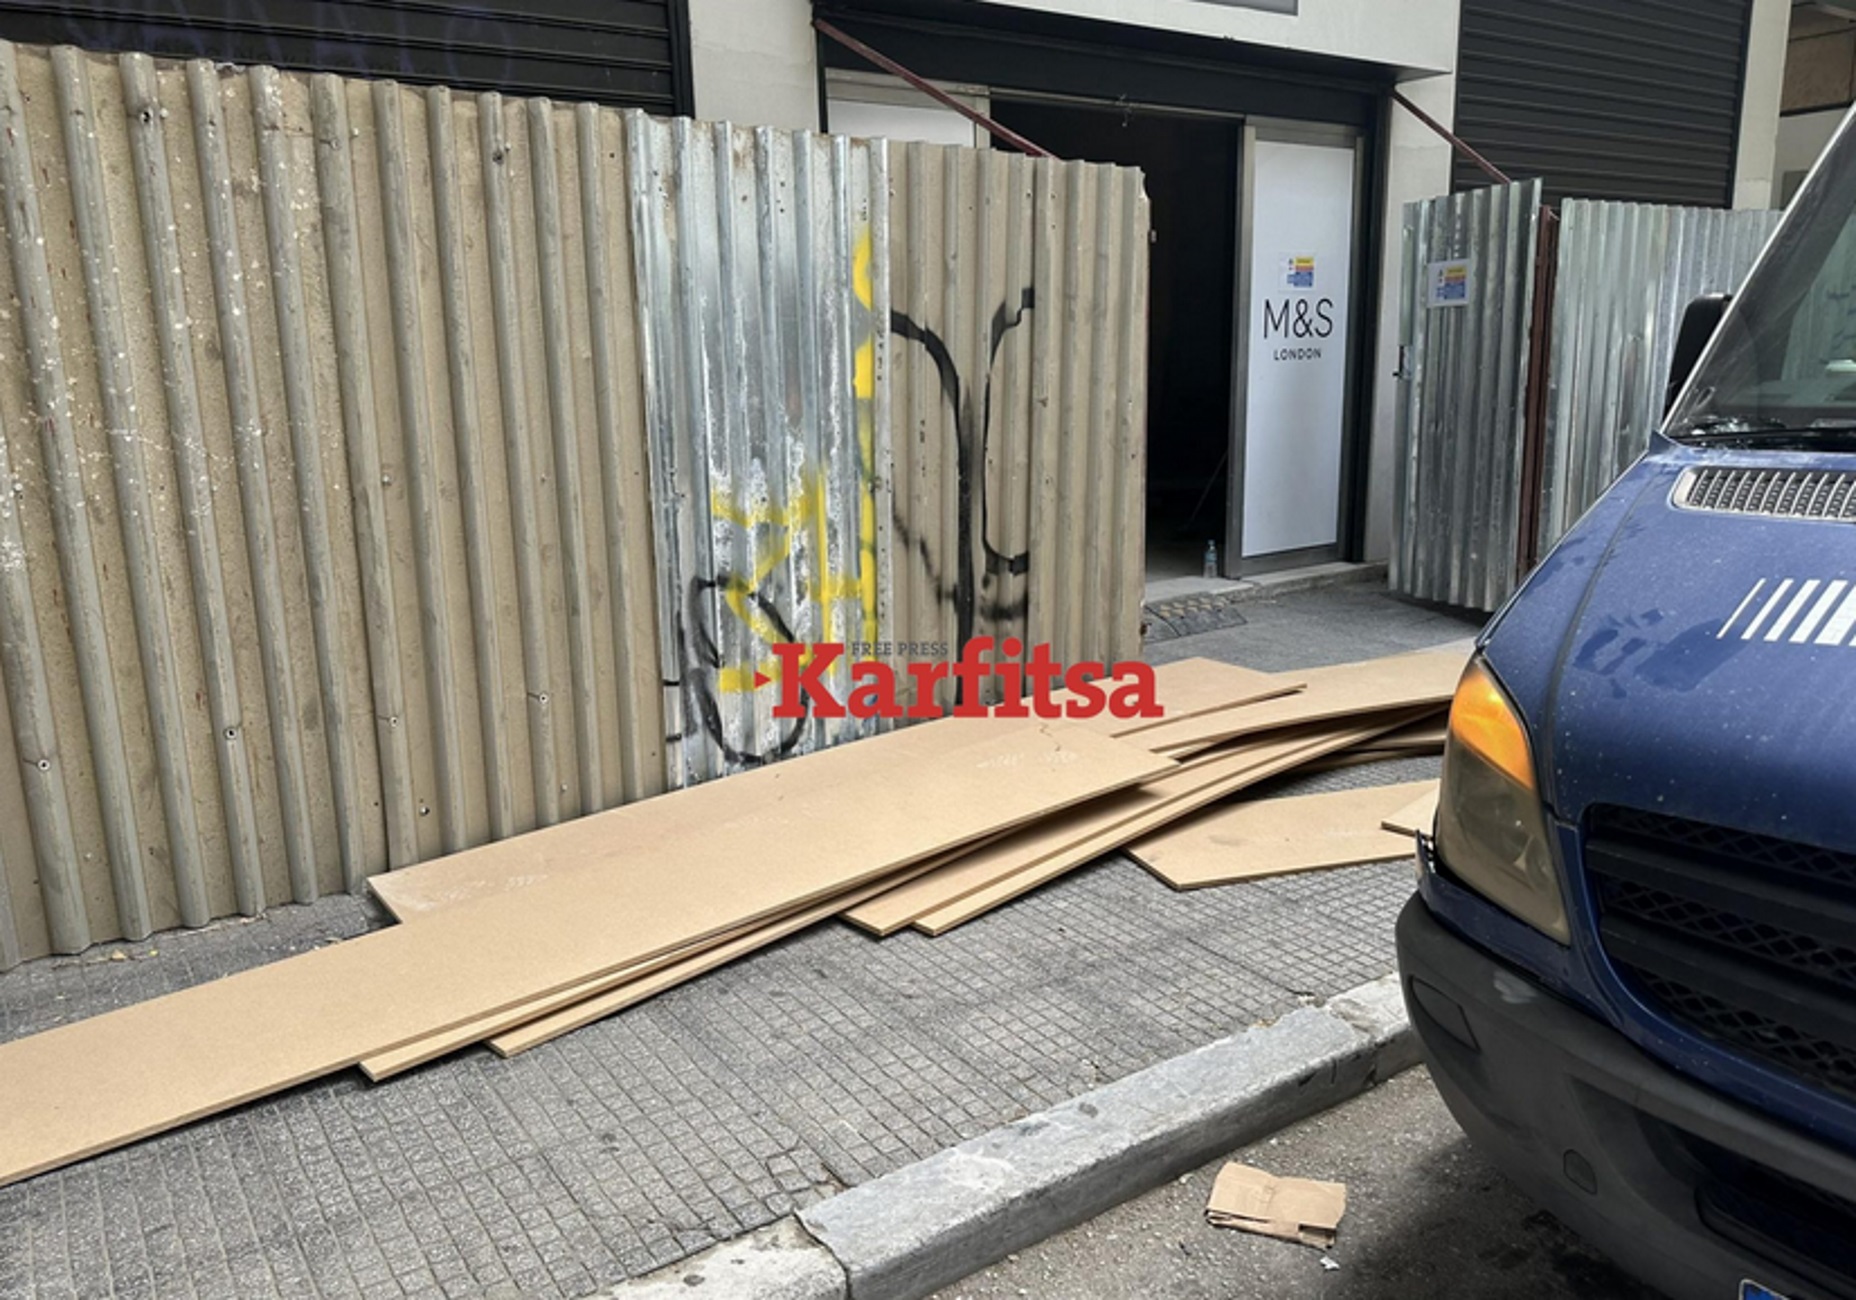 Θεσσαλονίκη: Ατύχημα στην Τσιμισκή με δύο γυναίκες να τραυματίζονται από σανίδες ξύλου που έπεσαν από διαμέρισμα